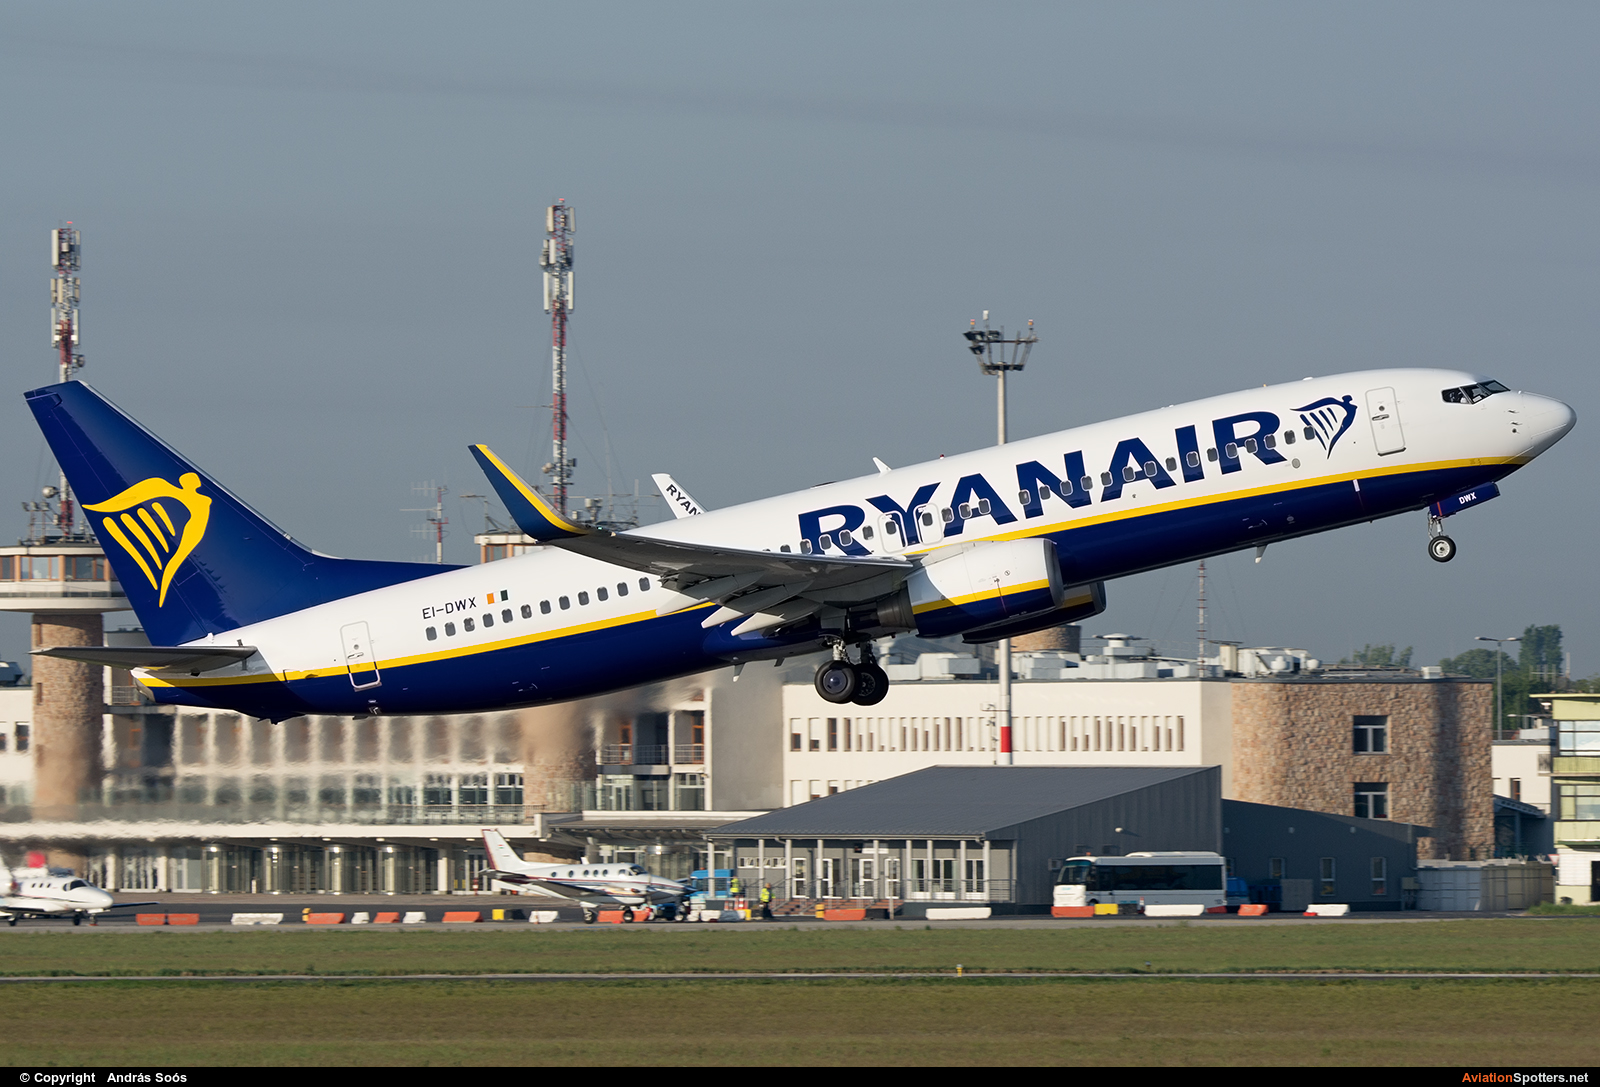 Ryanair  -  737-800  (EI-DWX) By András Soós (sas1965)